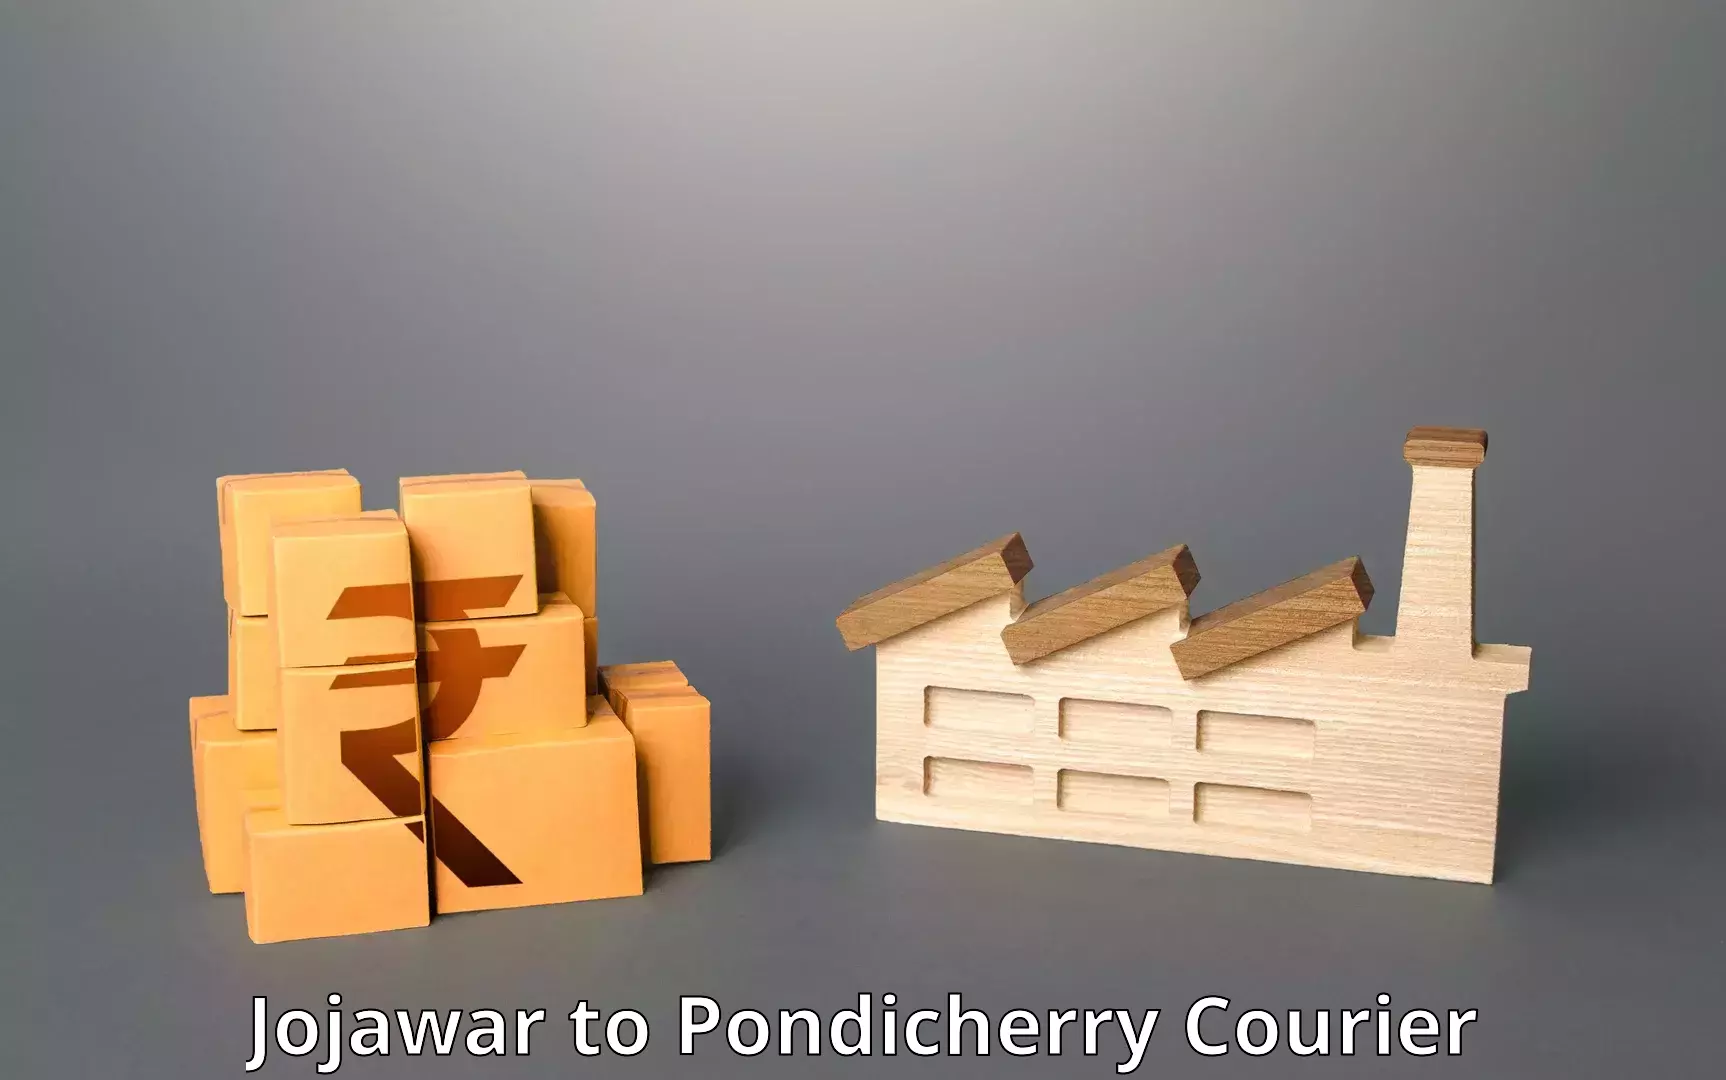 Nationwide parcel services Jojawar to Pondicherry